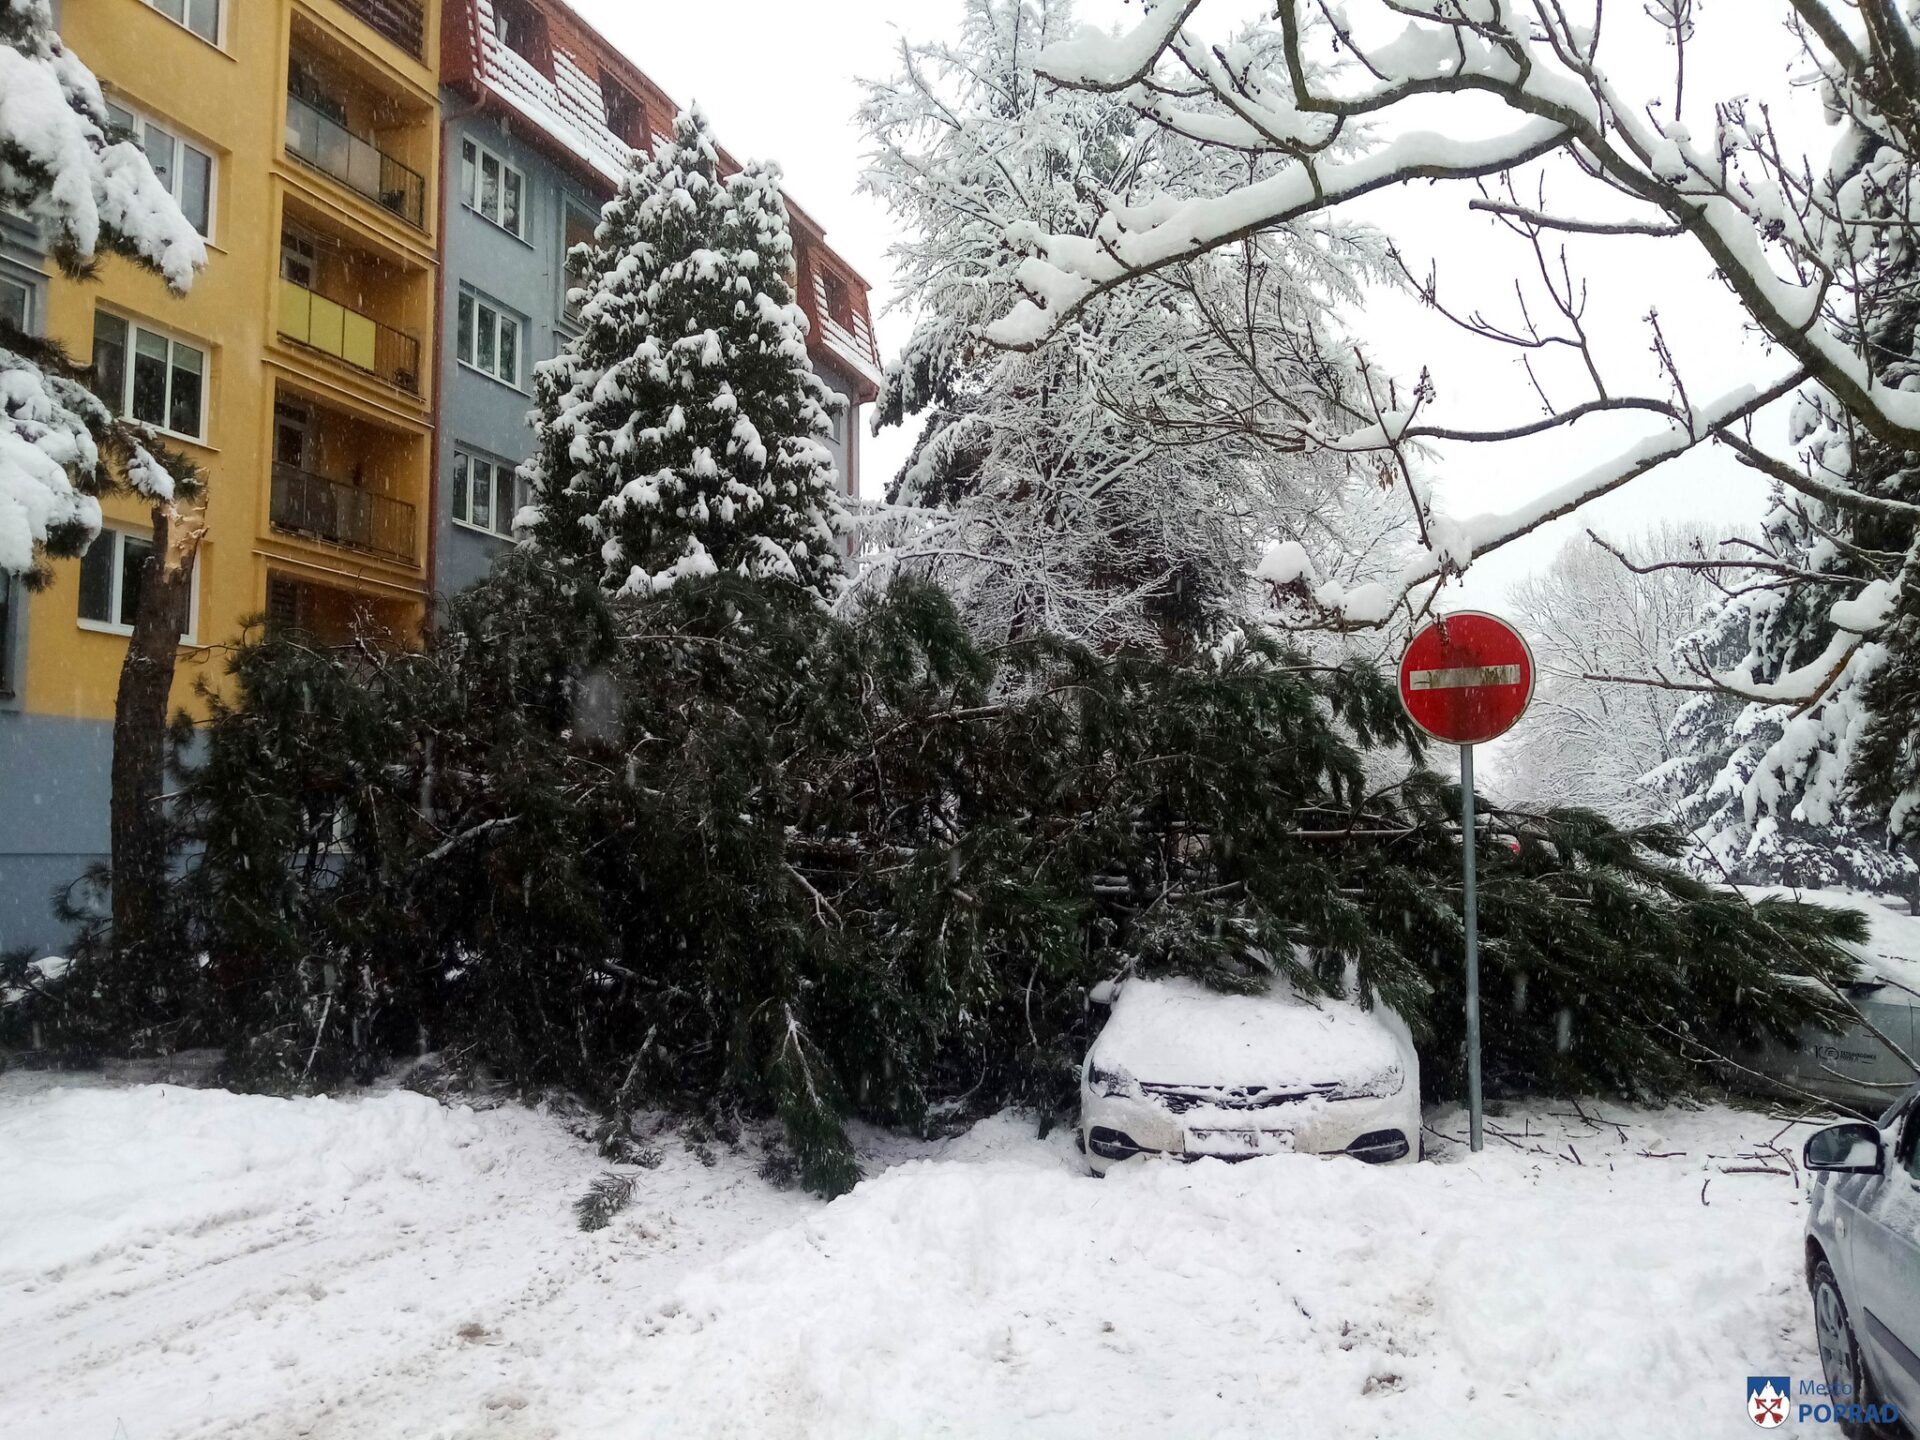 V Poprade hrozí vysoké riziko pádu stromov! (FOTO)